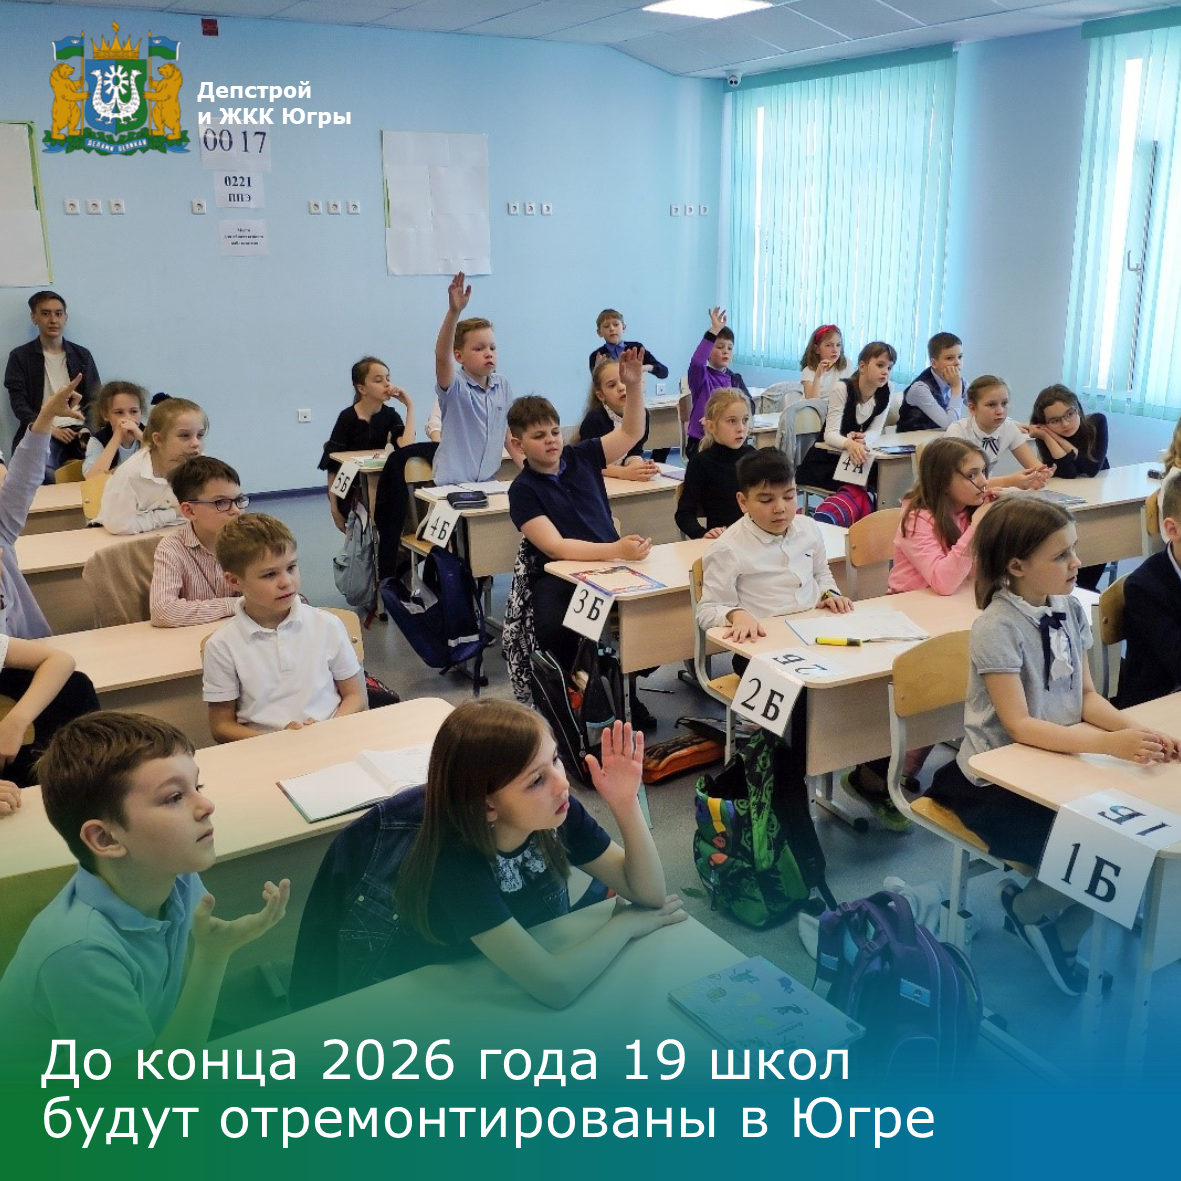 До конца 2026 года 19 школ будут отремонтированы в Югре